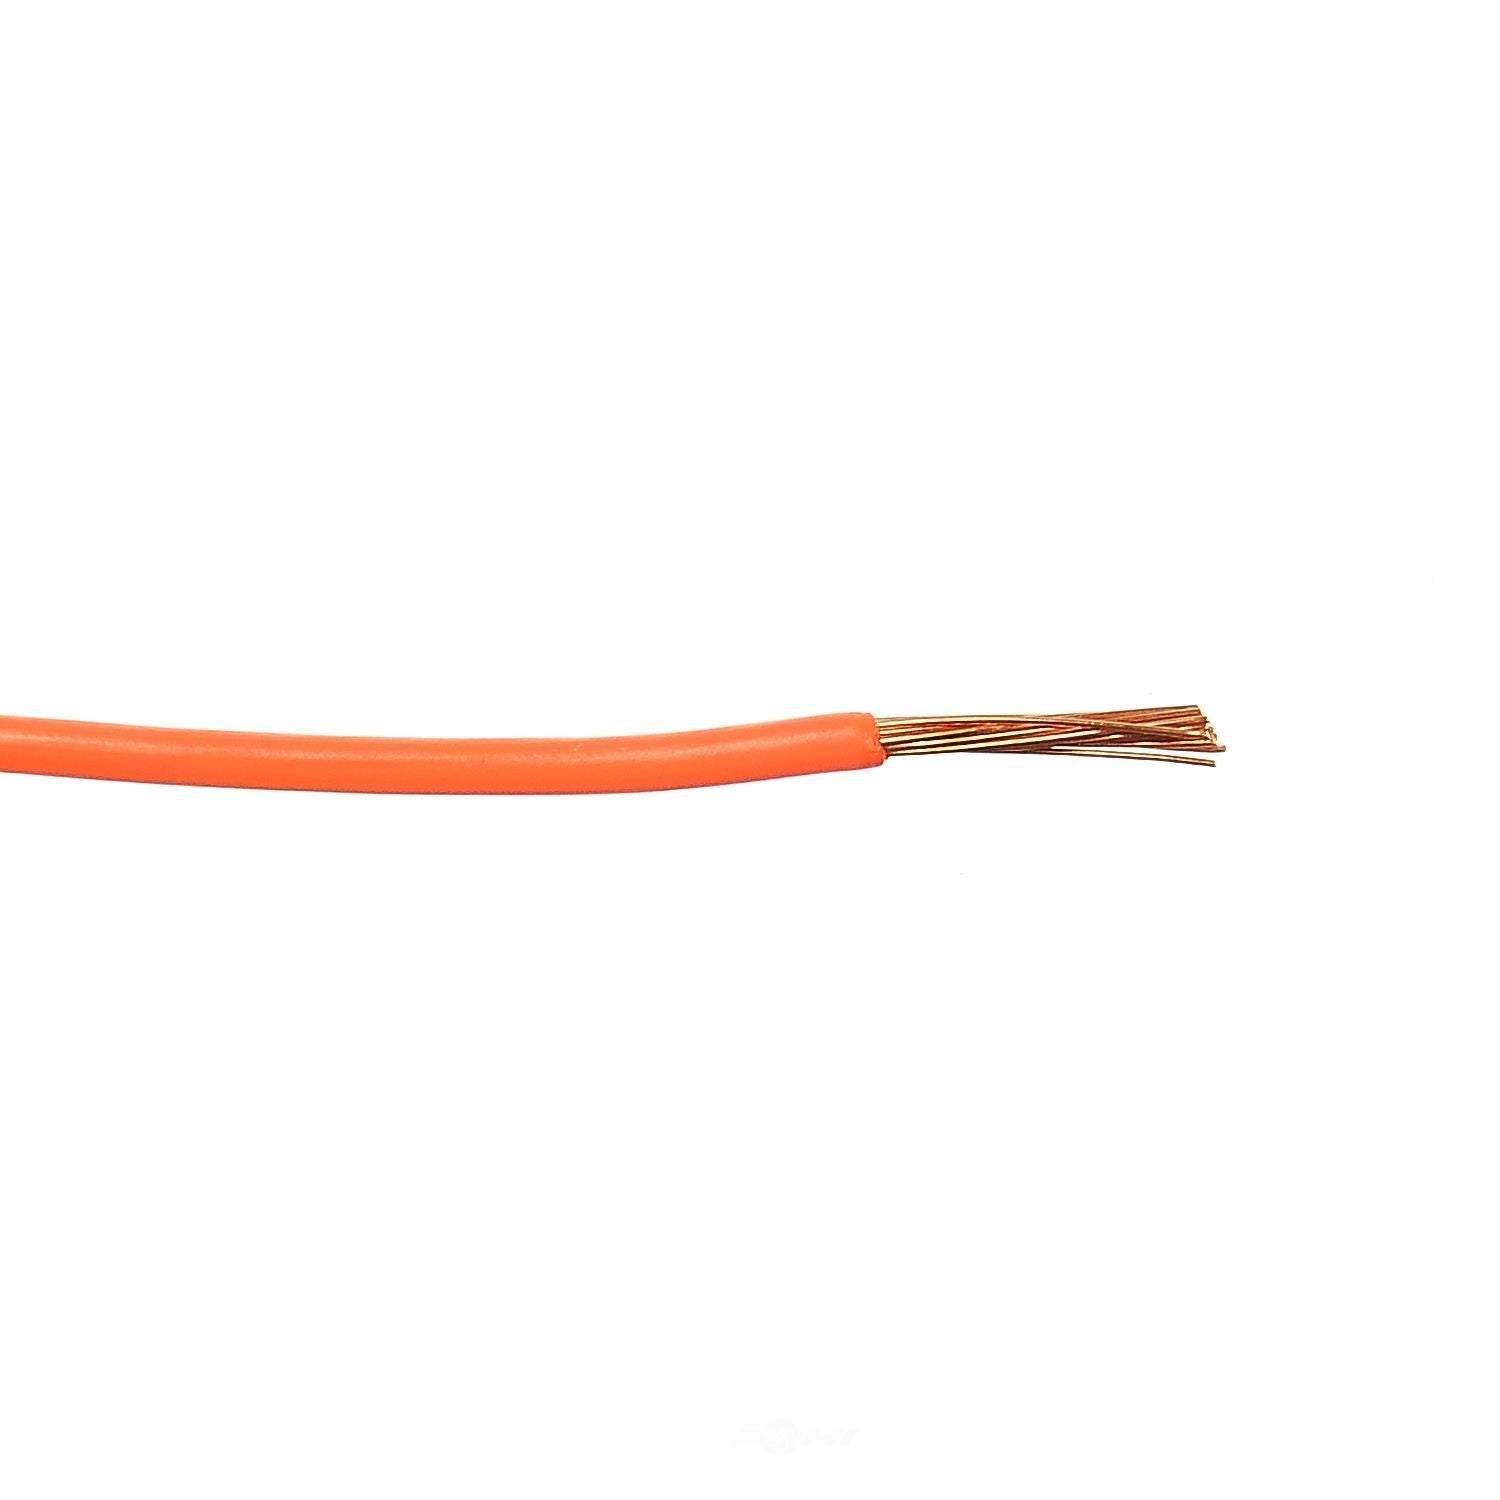 YSP WR41OR-100 Wells Bulk Primary Wire (Orange, 14G)